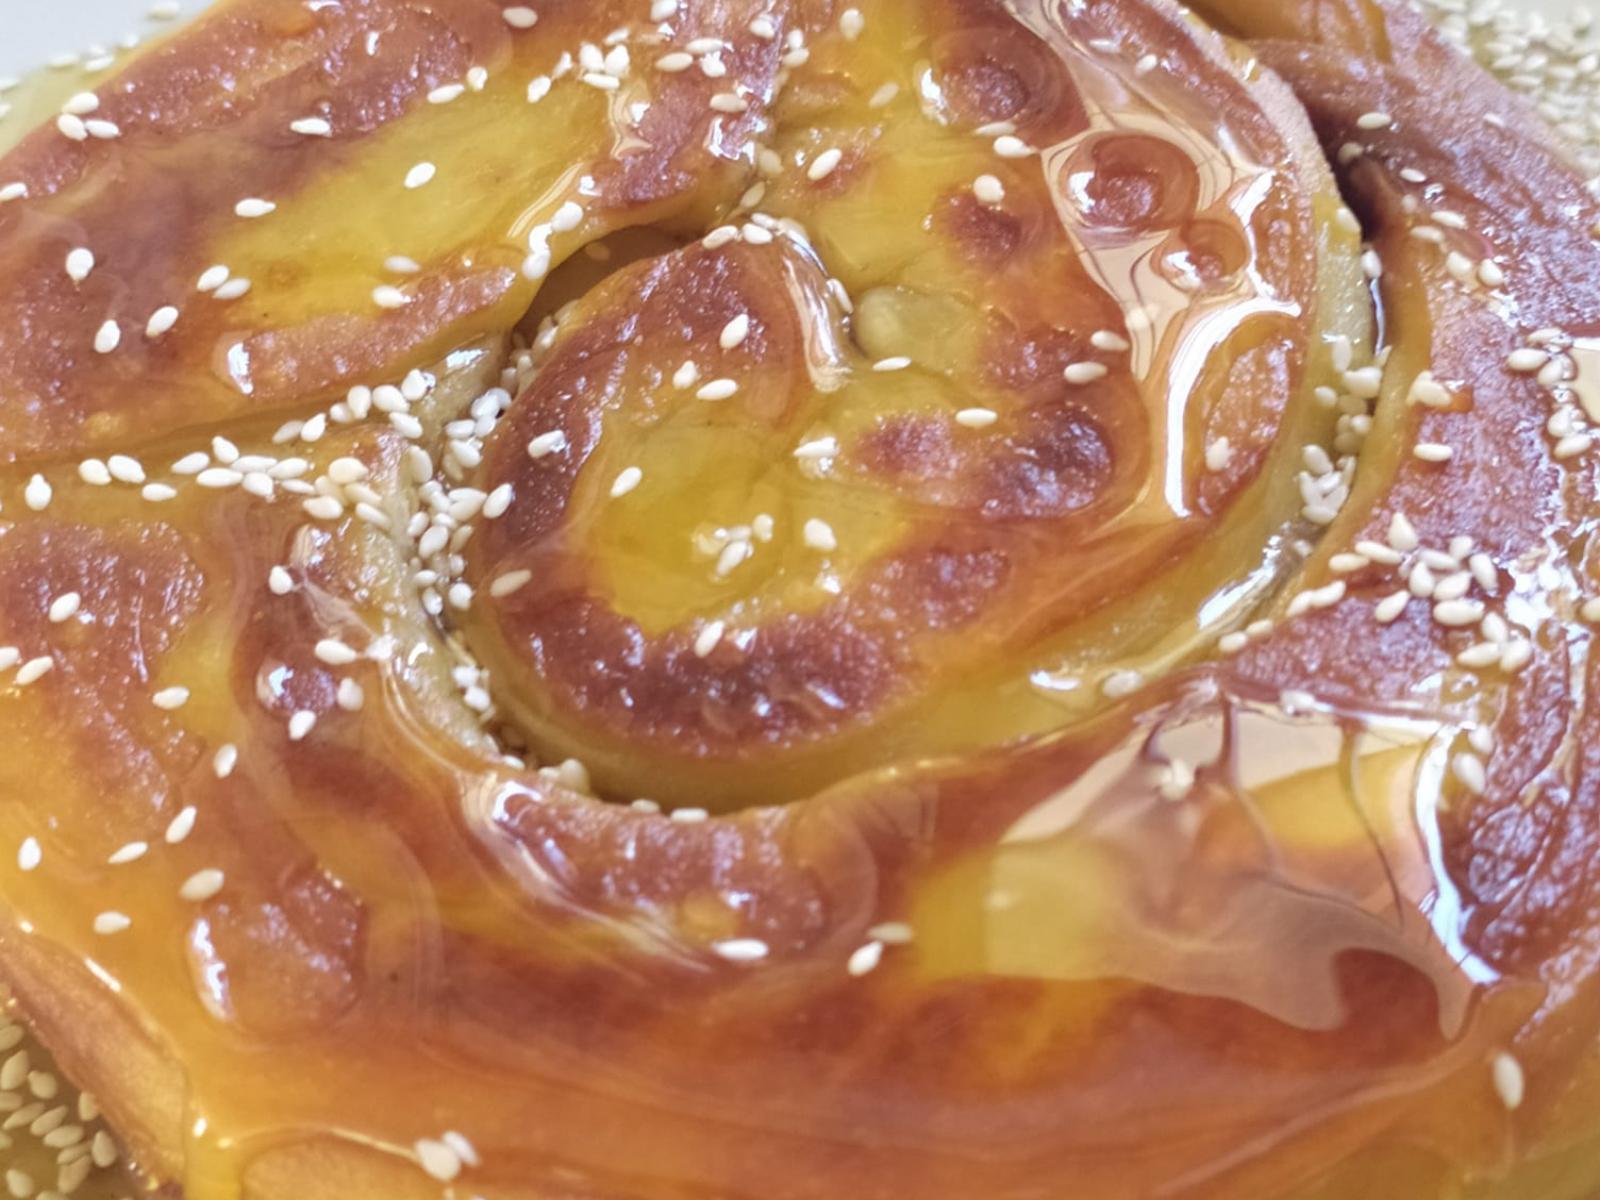 σκοπελίτικη-πίτα-με-σουσάμι-και-μέλι-συνταγή-